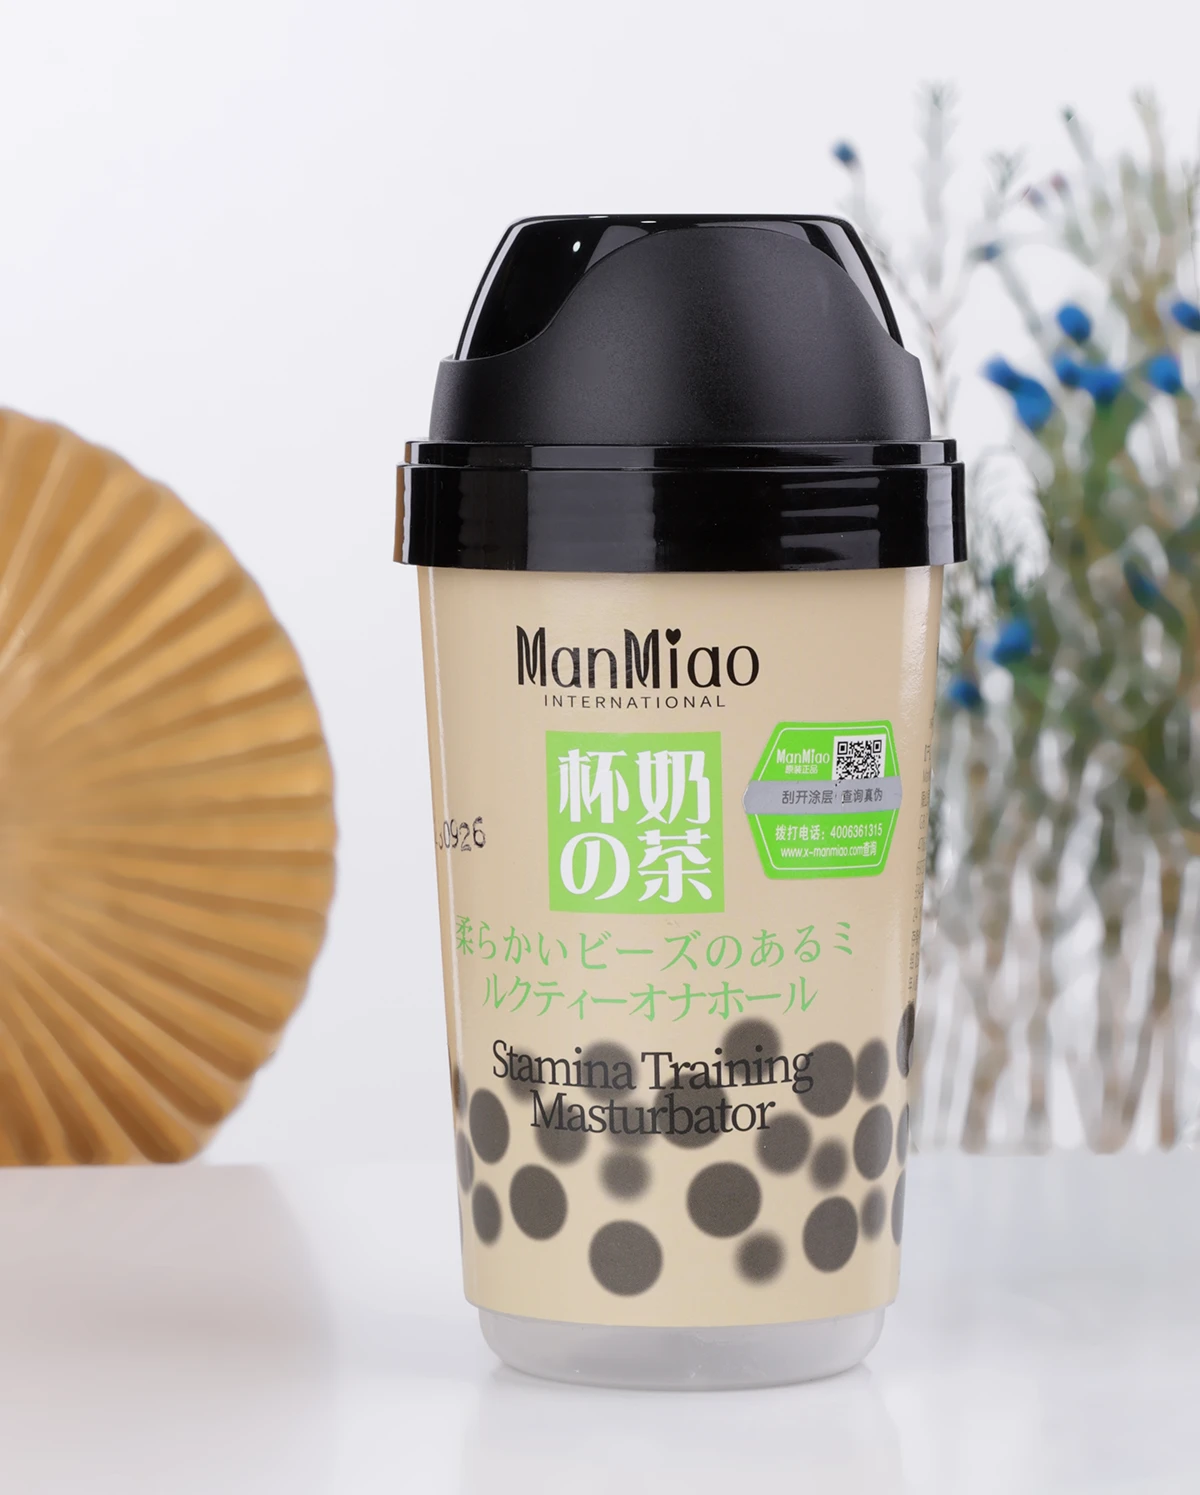 Sỉ Cốc thủ dâm Manmiao Stamina Training thiết kế nguỵ trang ly trà sữa có hạt trân châu có tốt không?